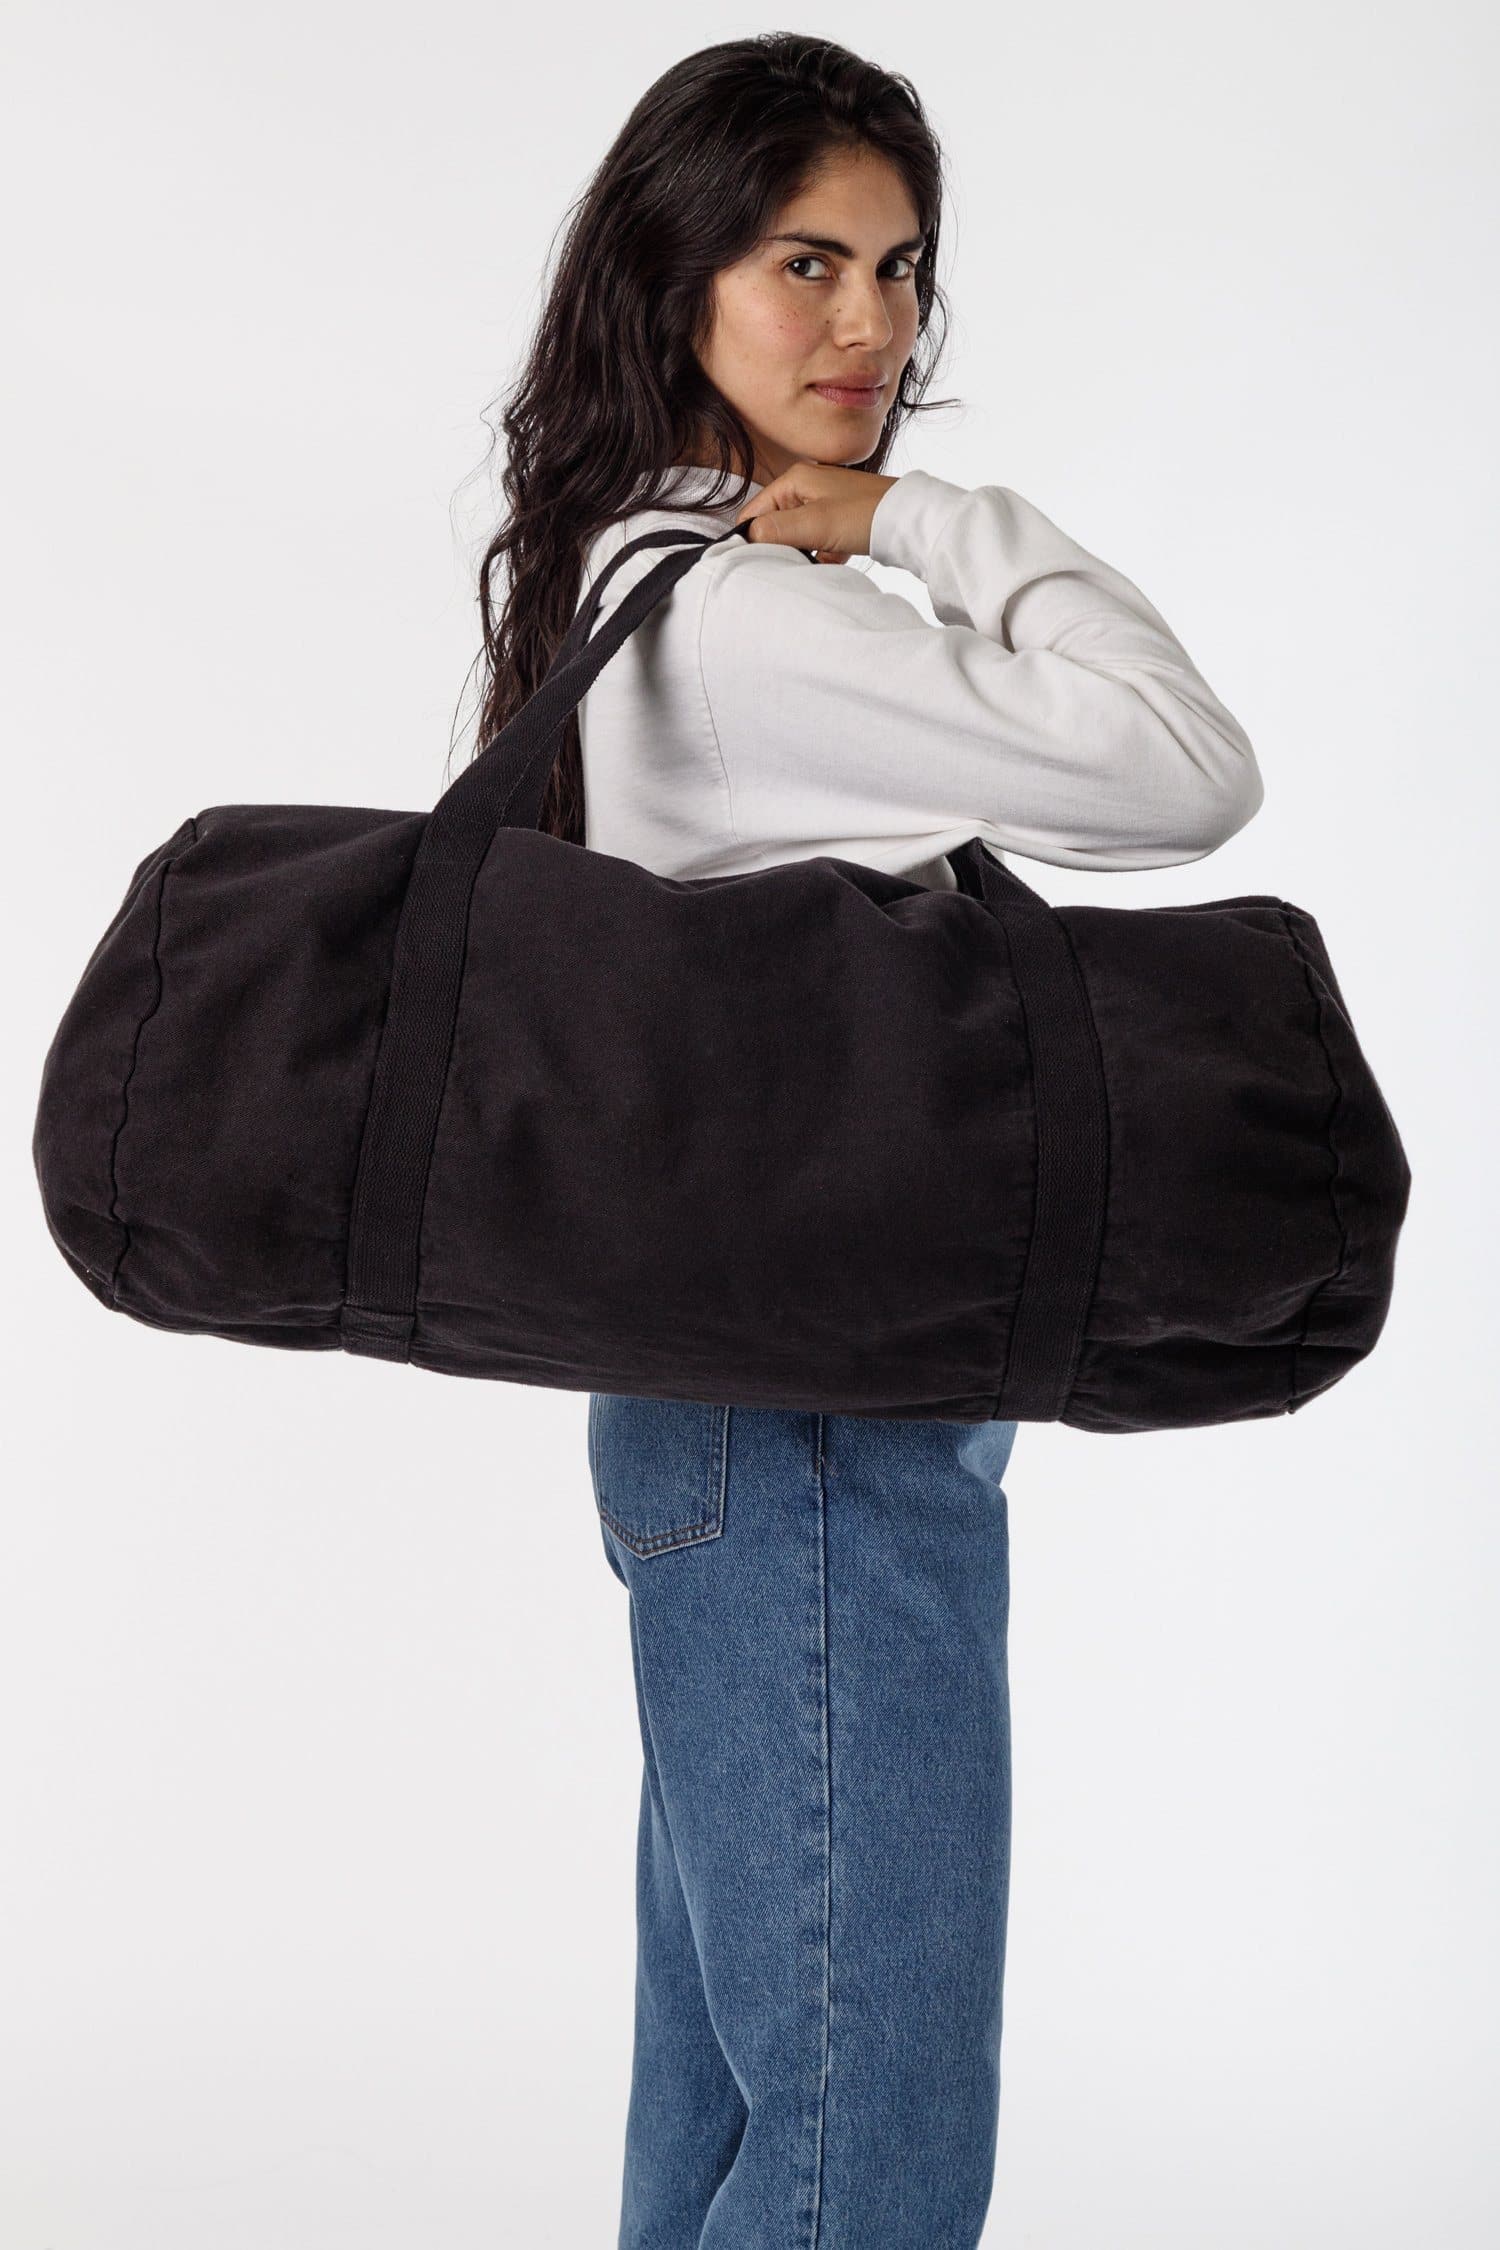 WEEKENDER TRAVEL BAG - Styled Snapshots  Weekend travel bags, Womens  weekender bag, Travel bags for women